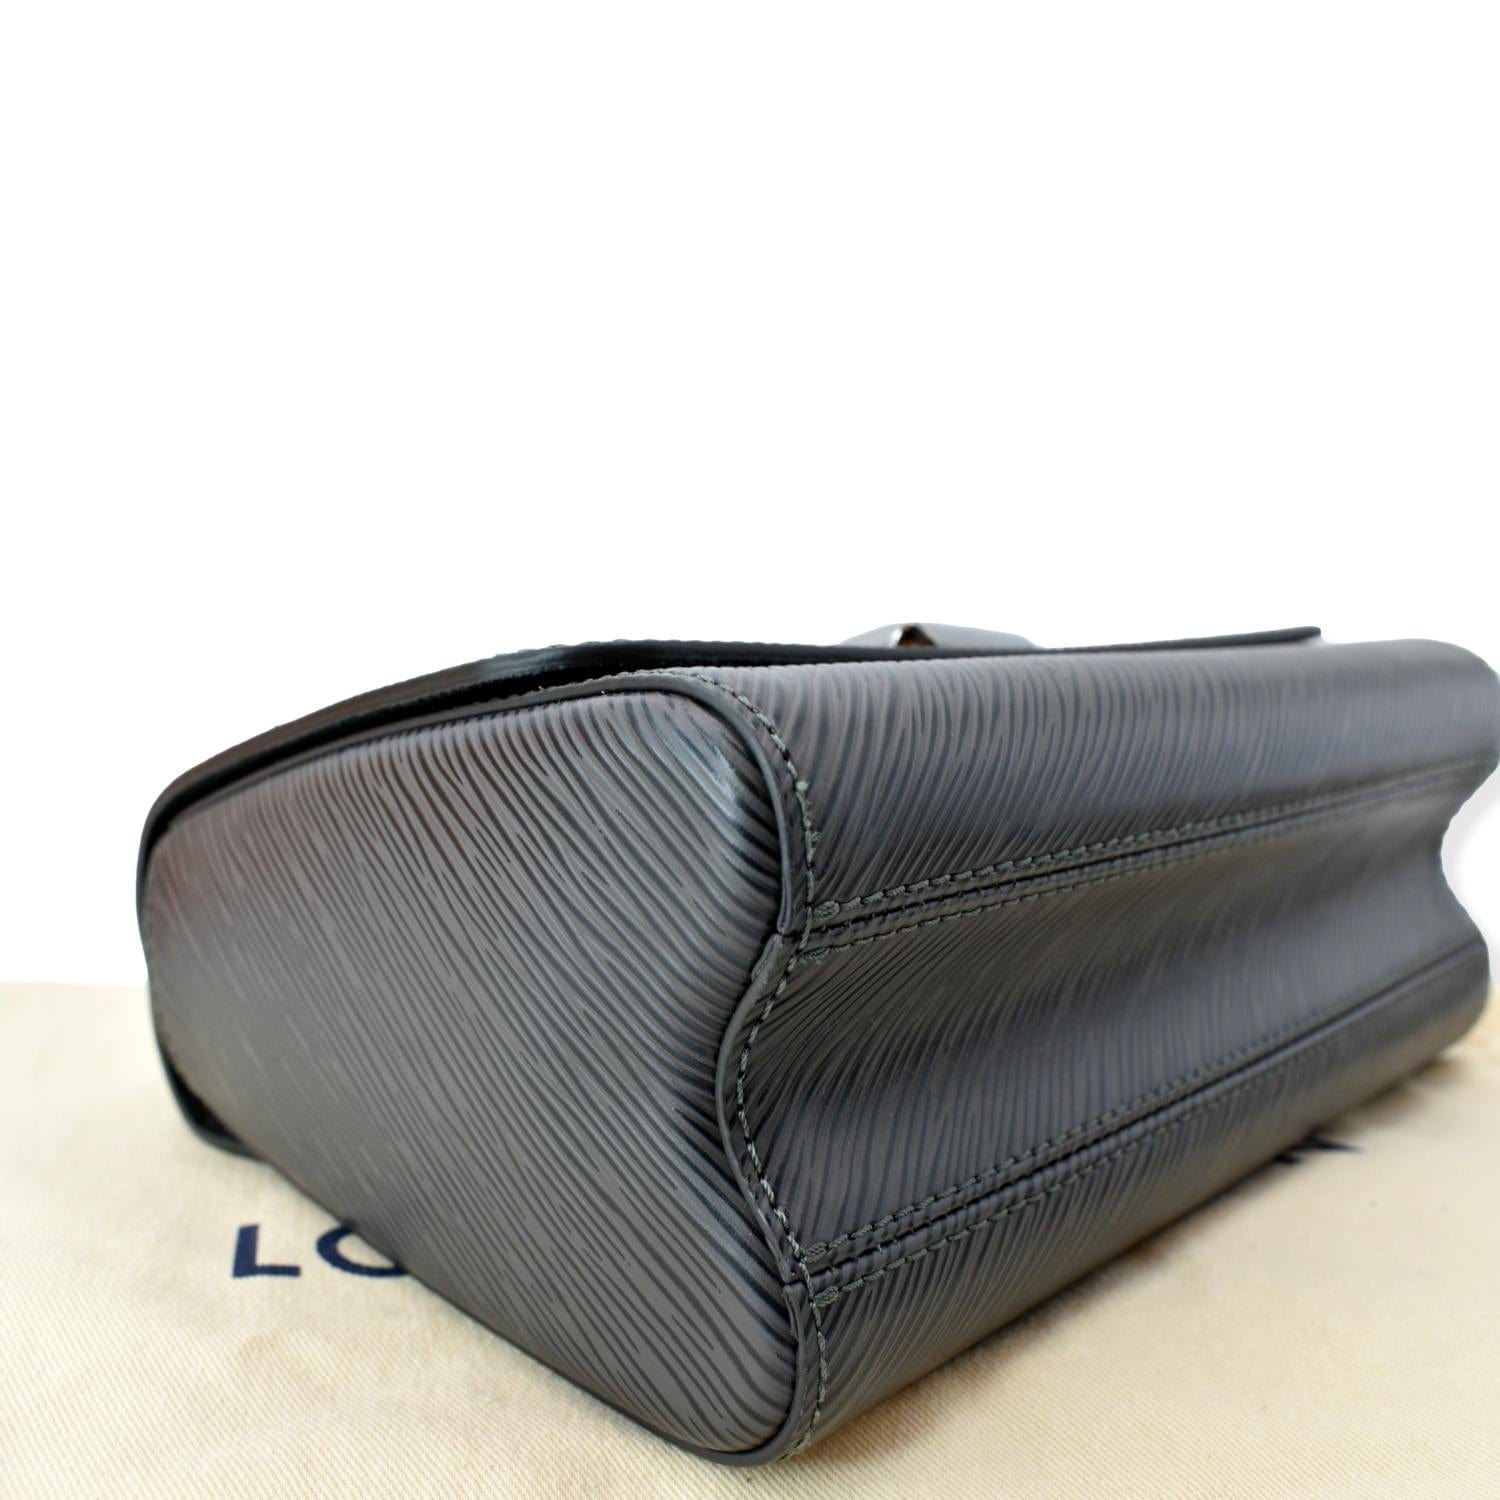 Twist MM Epi – Keeks Designer Handbags